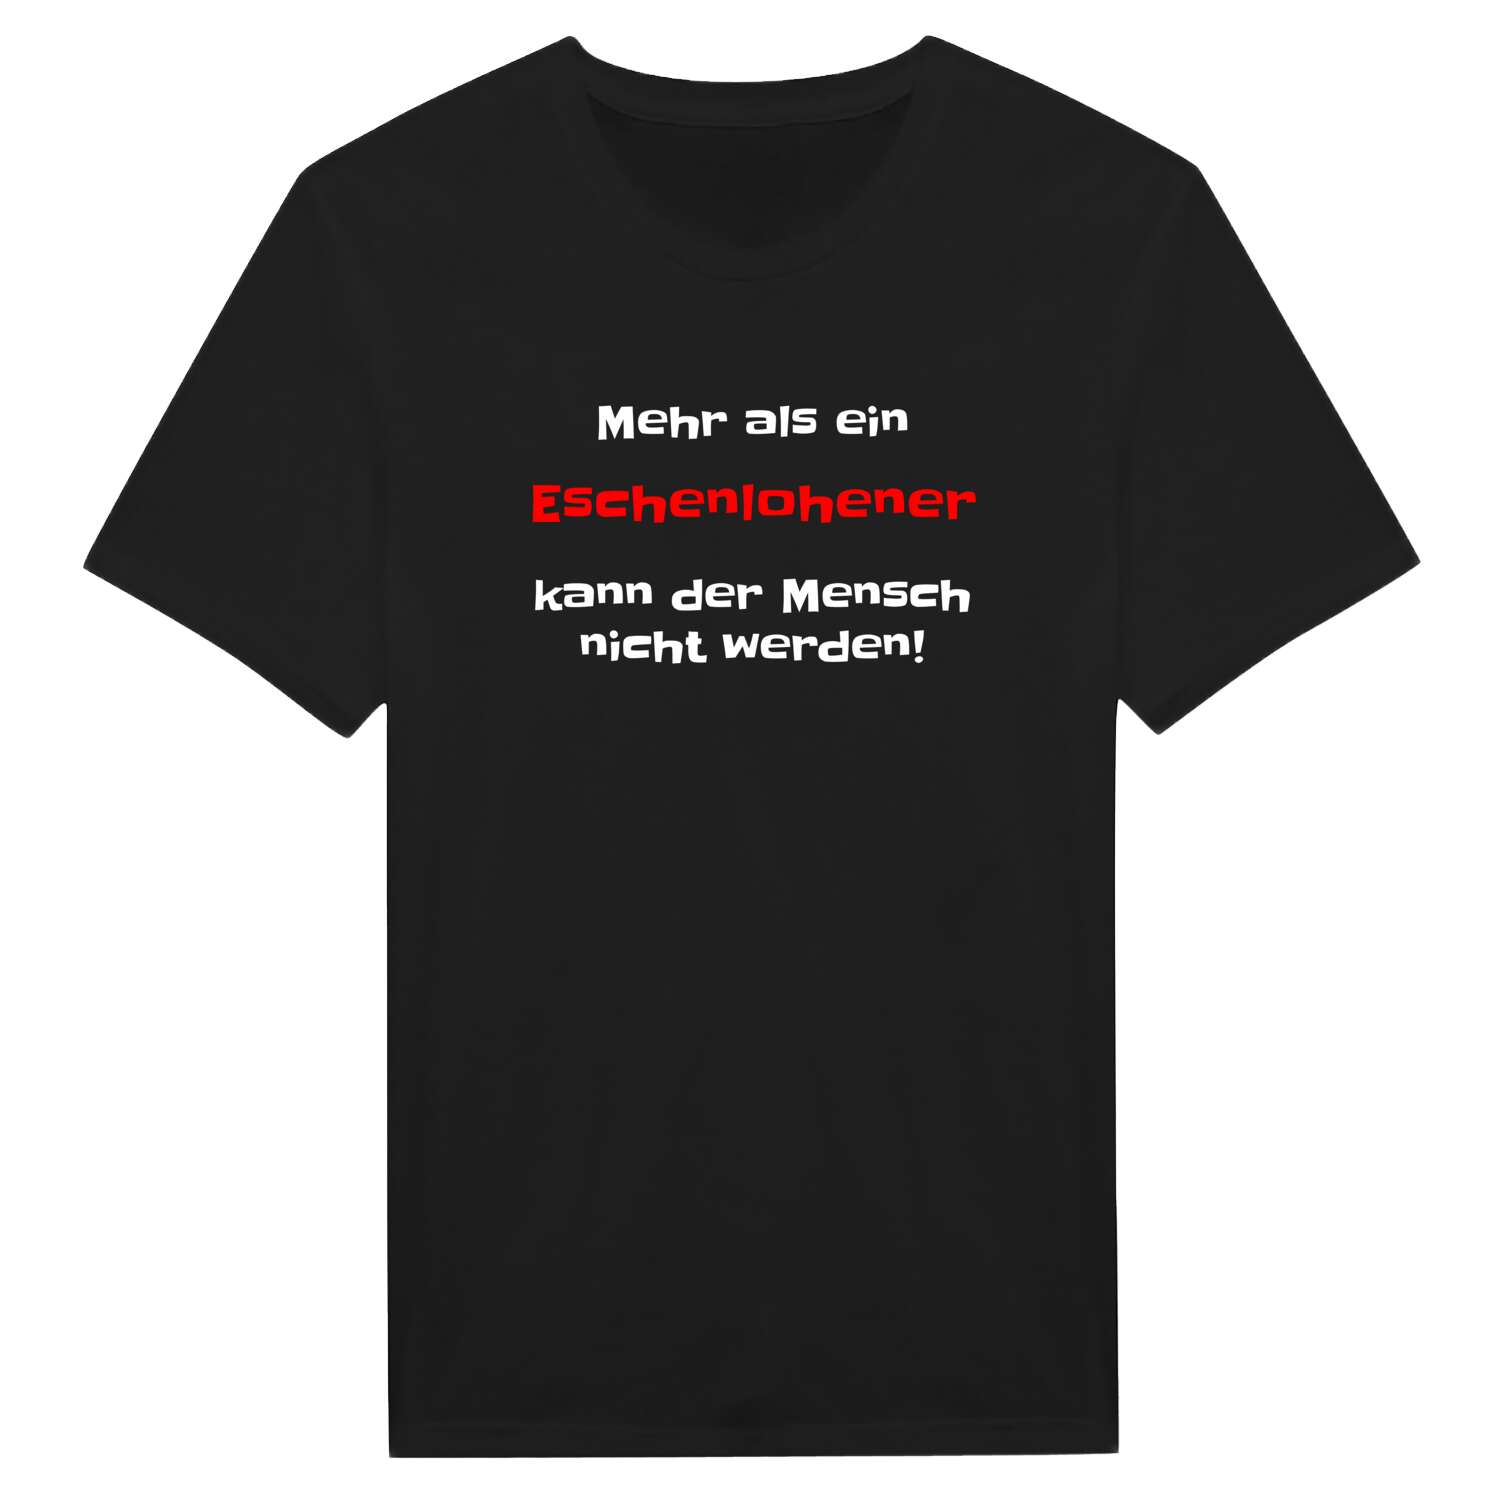 Eschenlohe T-Shirt »Mehr als ein«